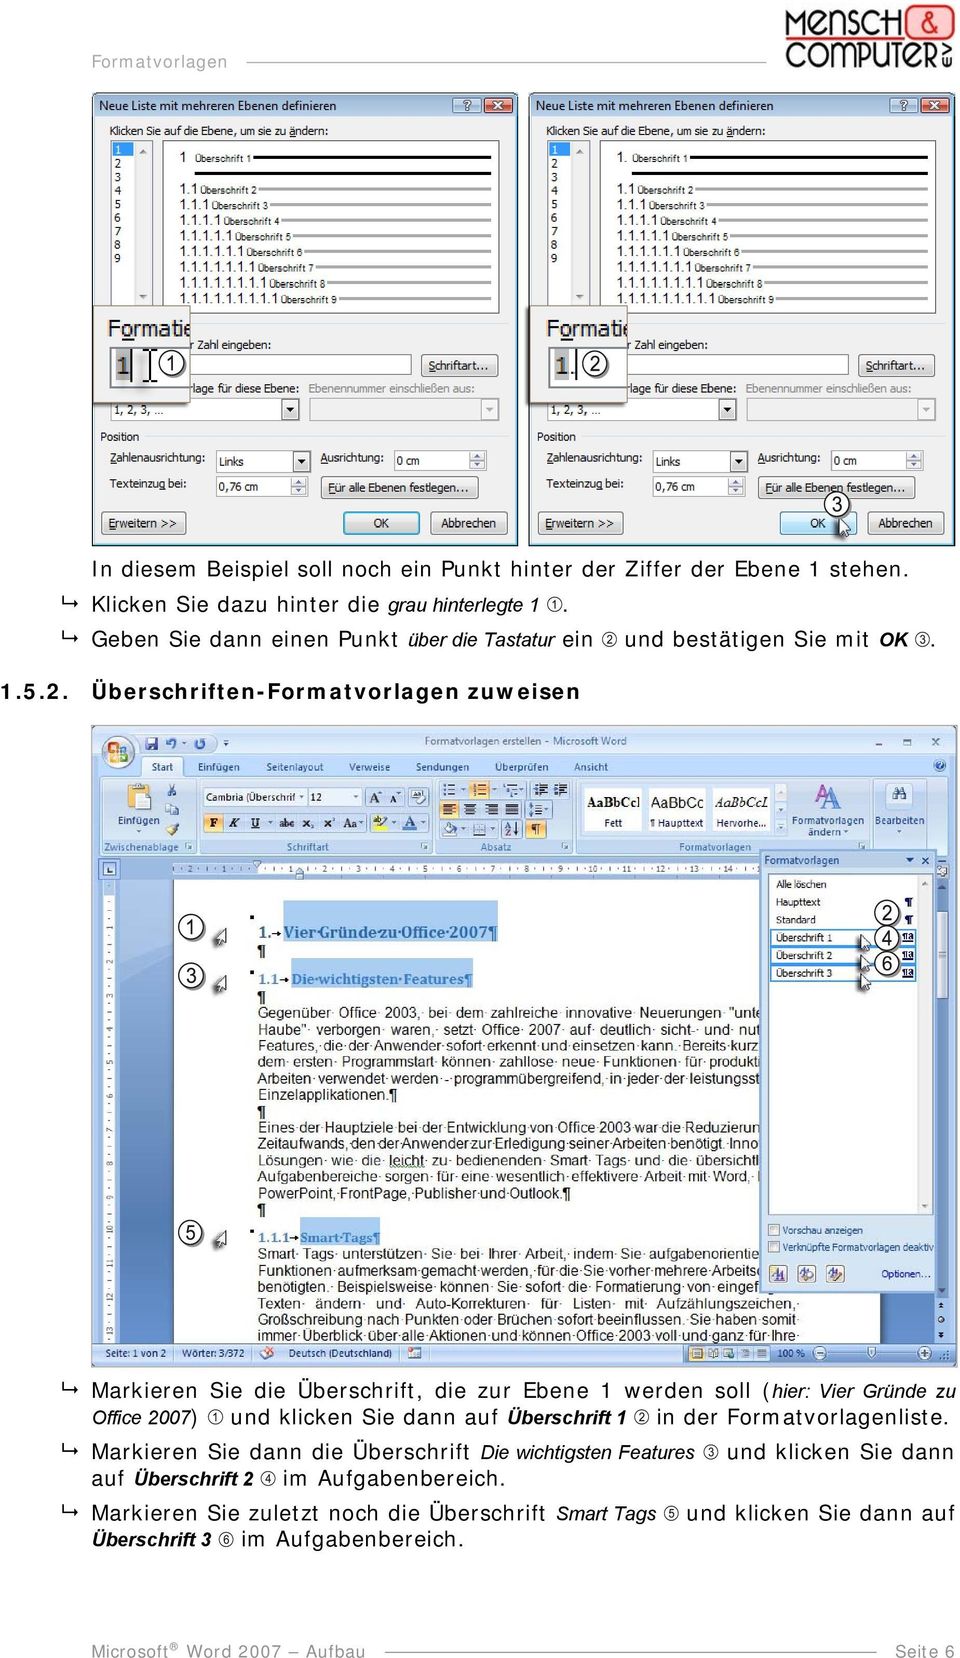 Überschriften-Formatvorlagen zuweisen Markieren Sie die Überschrift, die zur Ebene 1 werden soll (hier: Vier Gründe zu Office 2007) und klicken Sie dann auf Überschrift 1